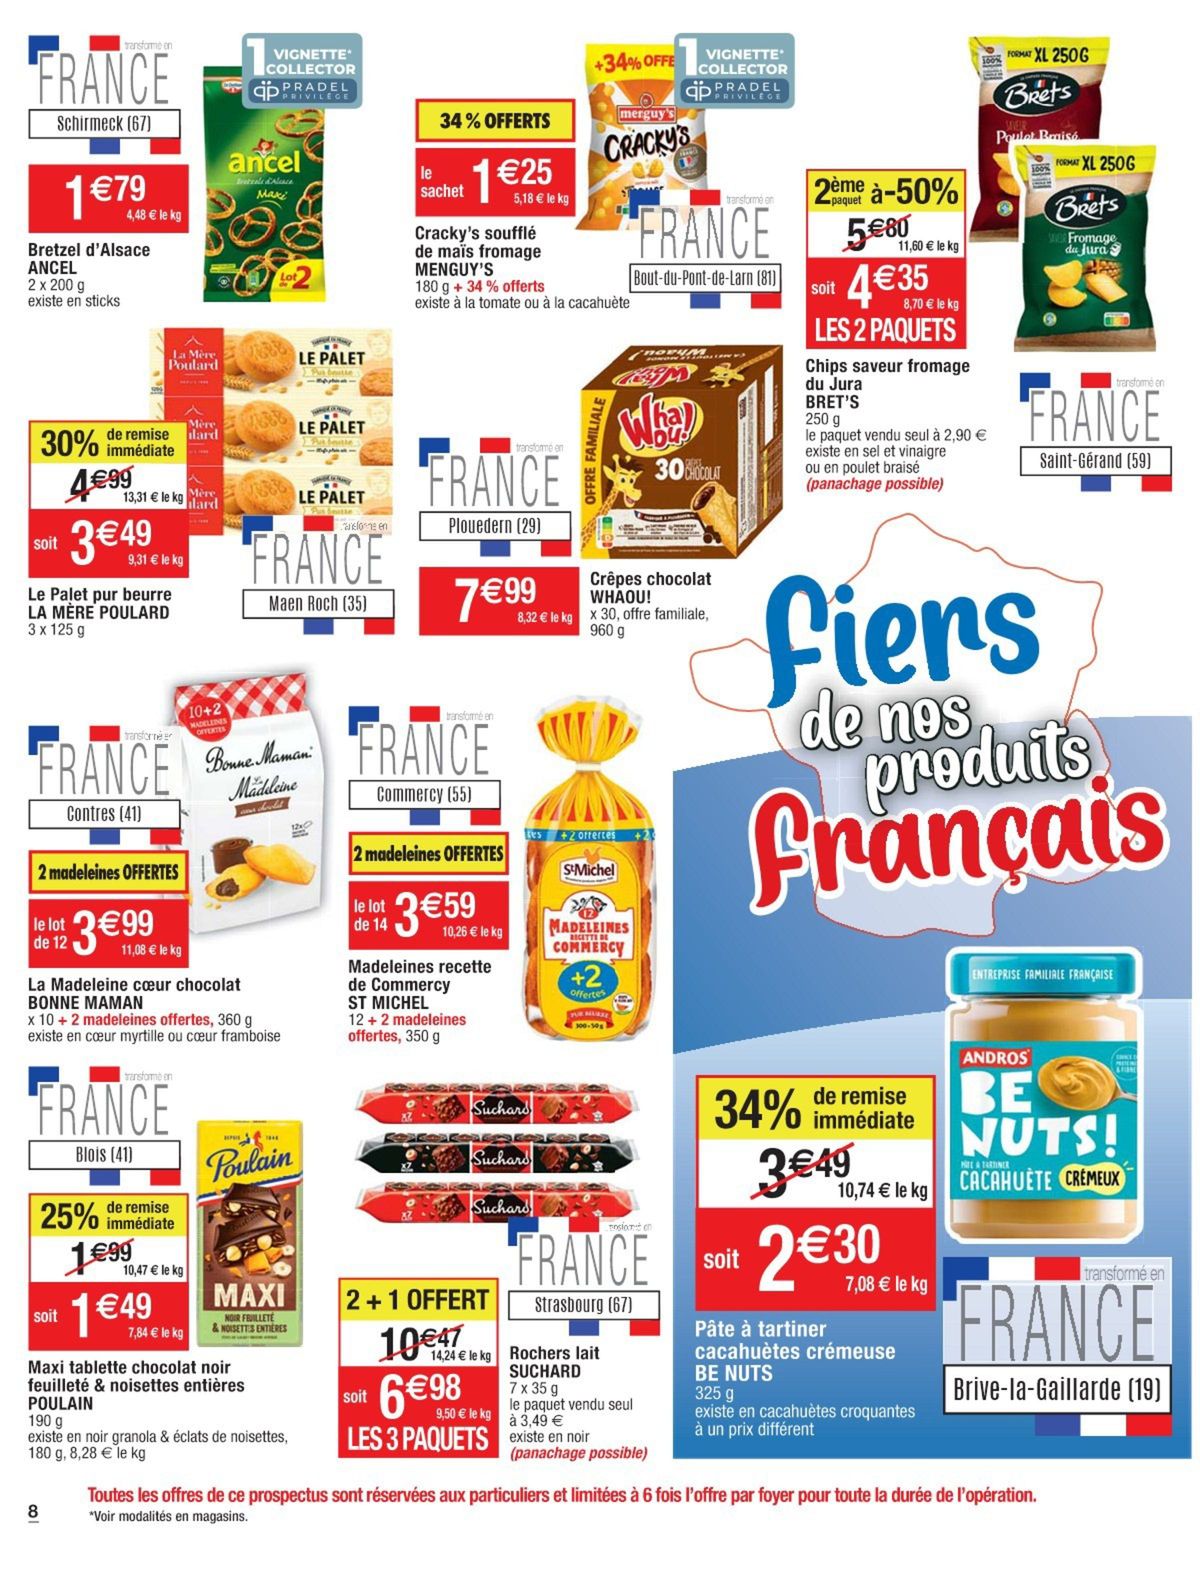 Catalogue Fiers de nos produits français, page 00034